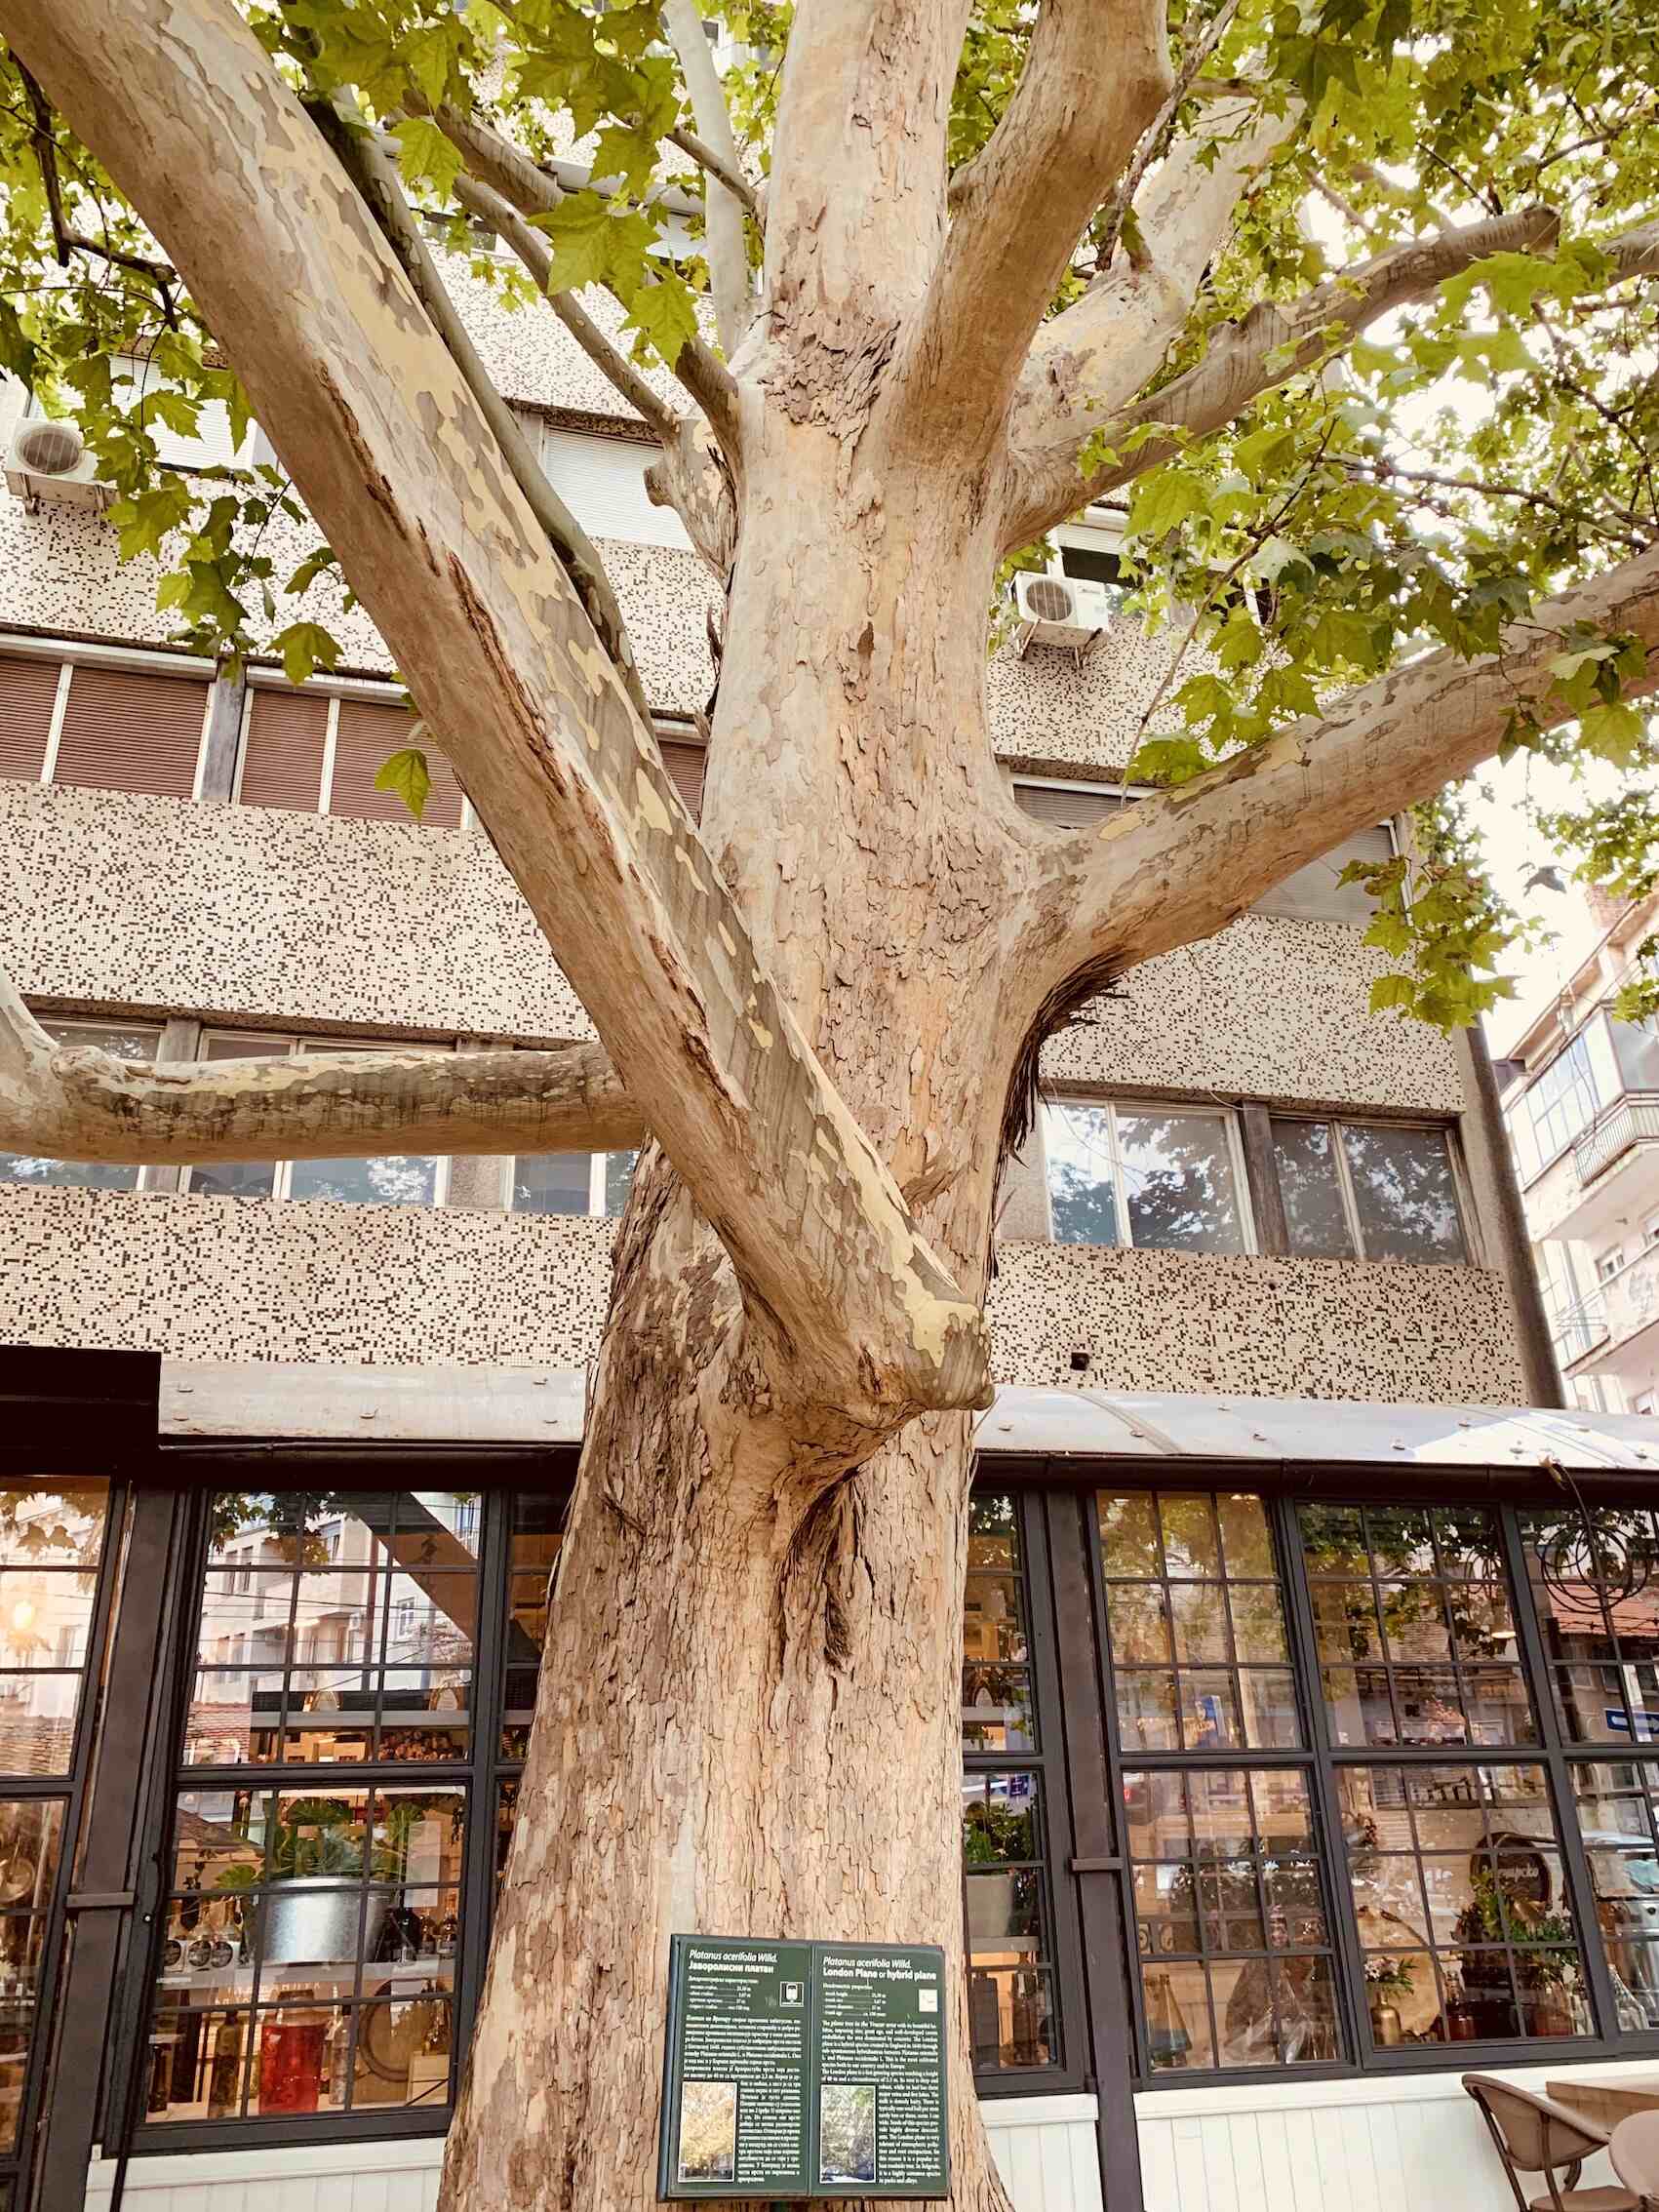 The magnificent London plane tree at Bistro Trandafilović in Belgrade